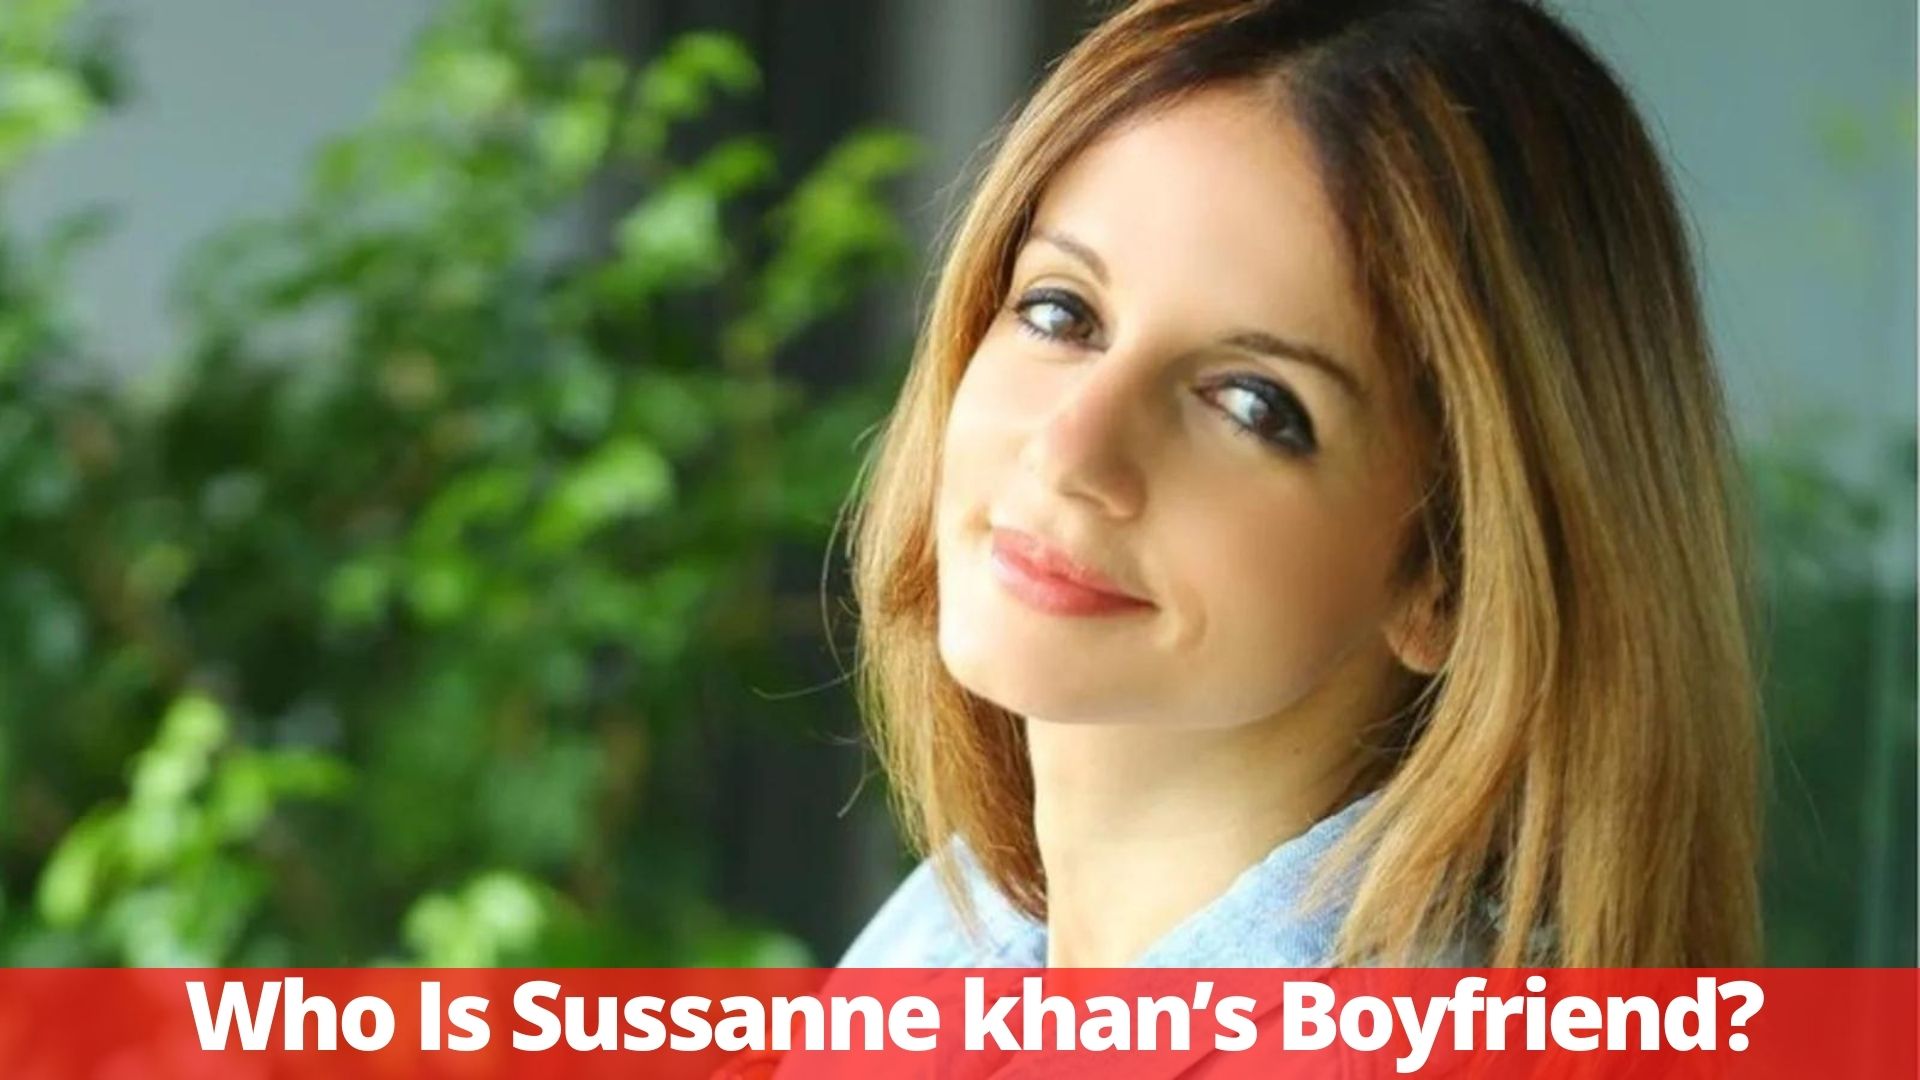 Who Is Sussanne khan’s Boyfriend?